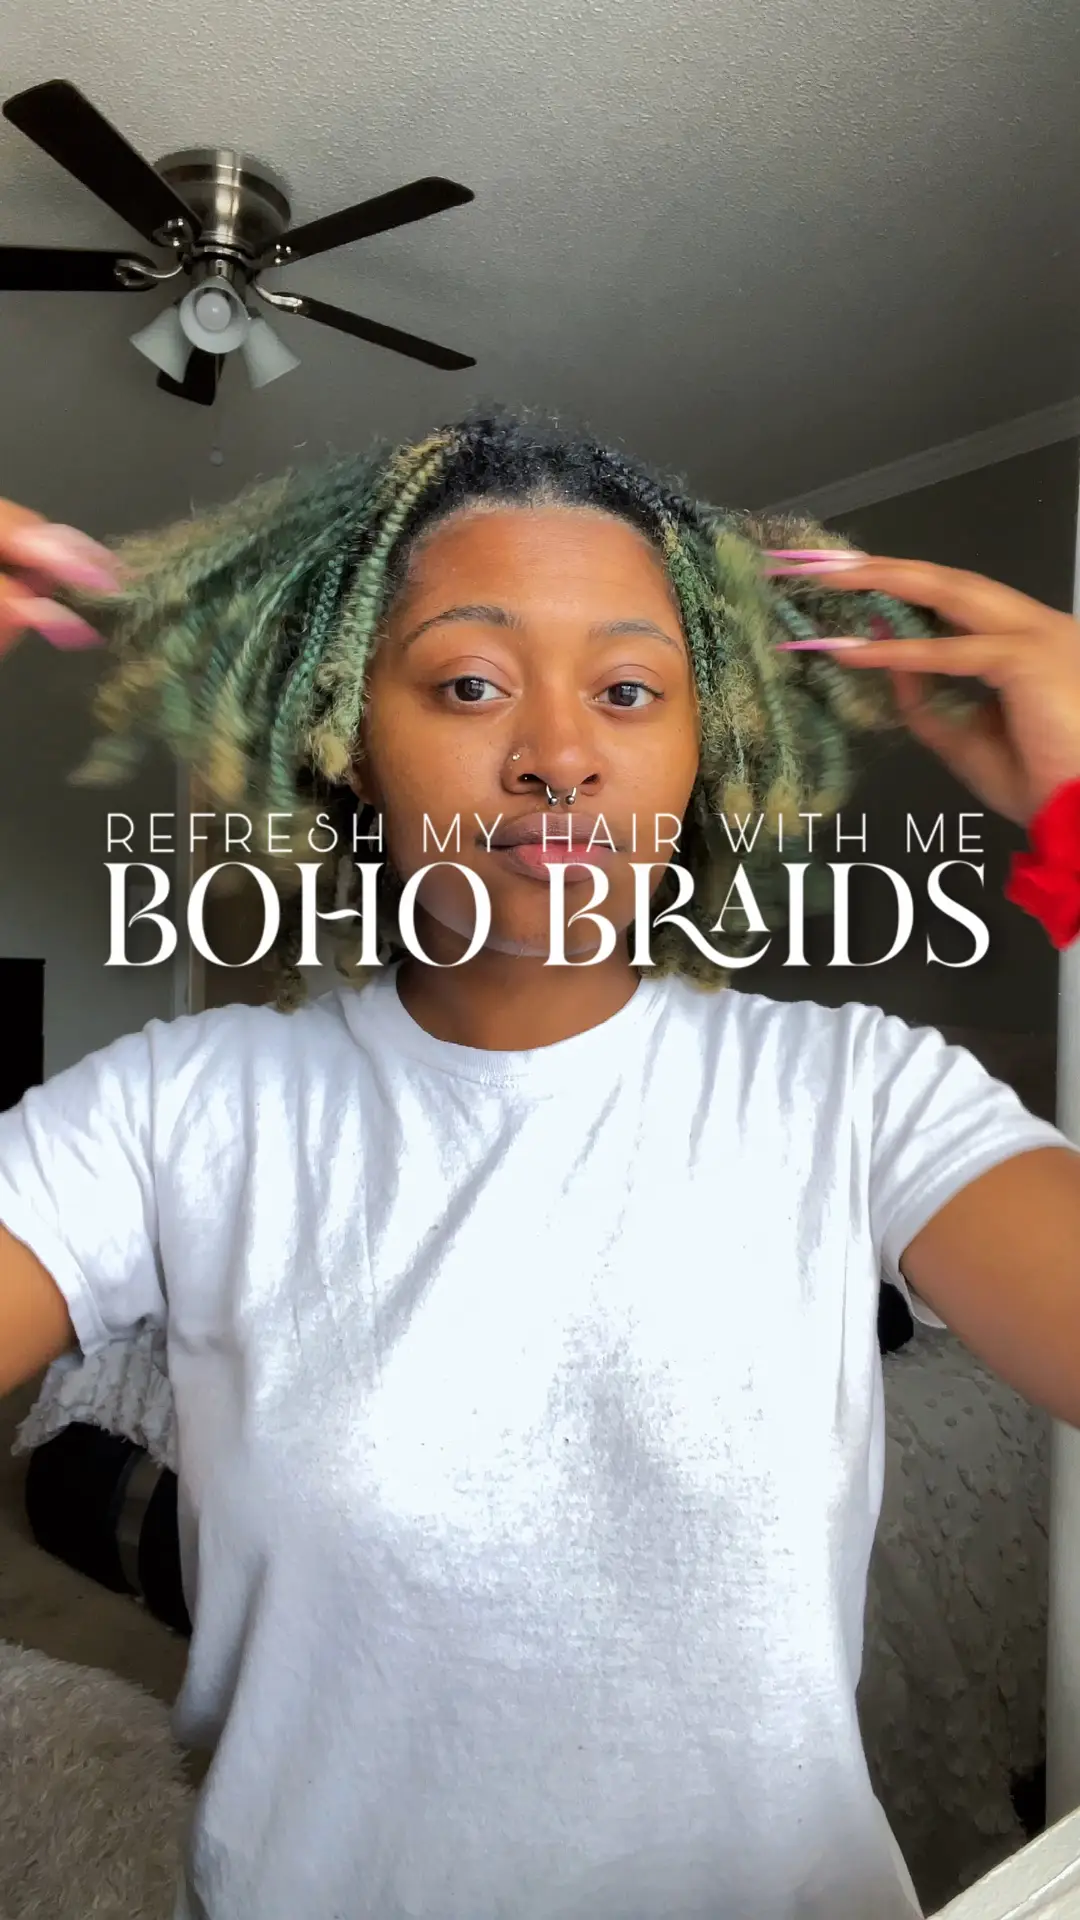 Boho Goddess Braids on Natural Hair!